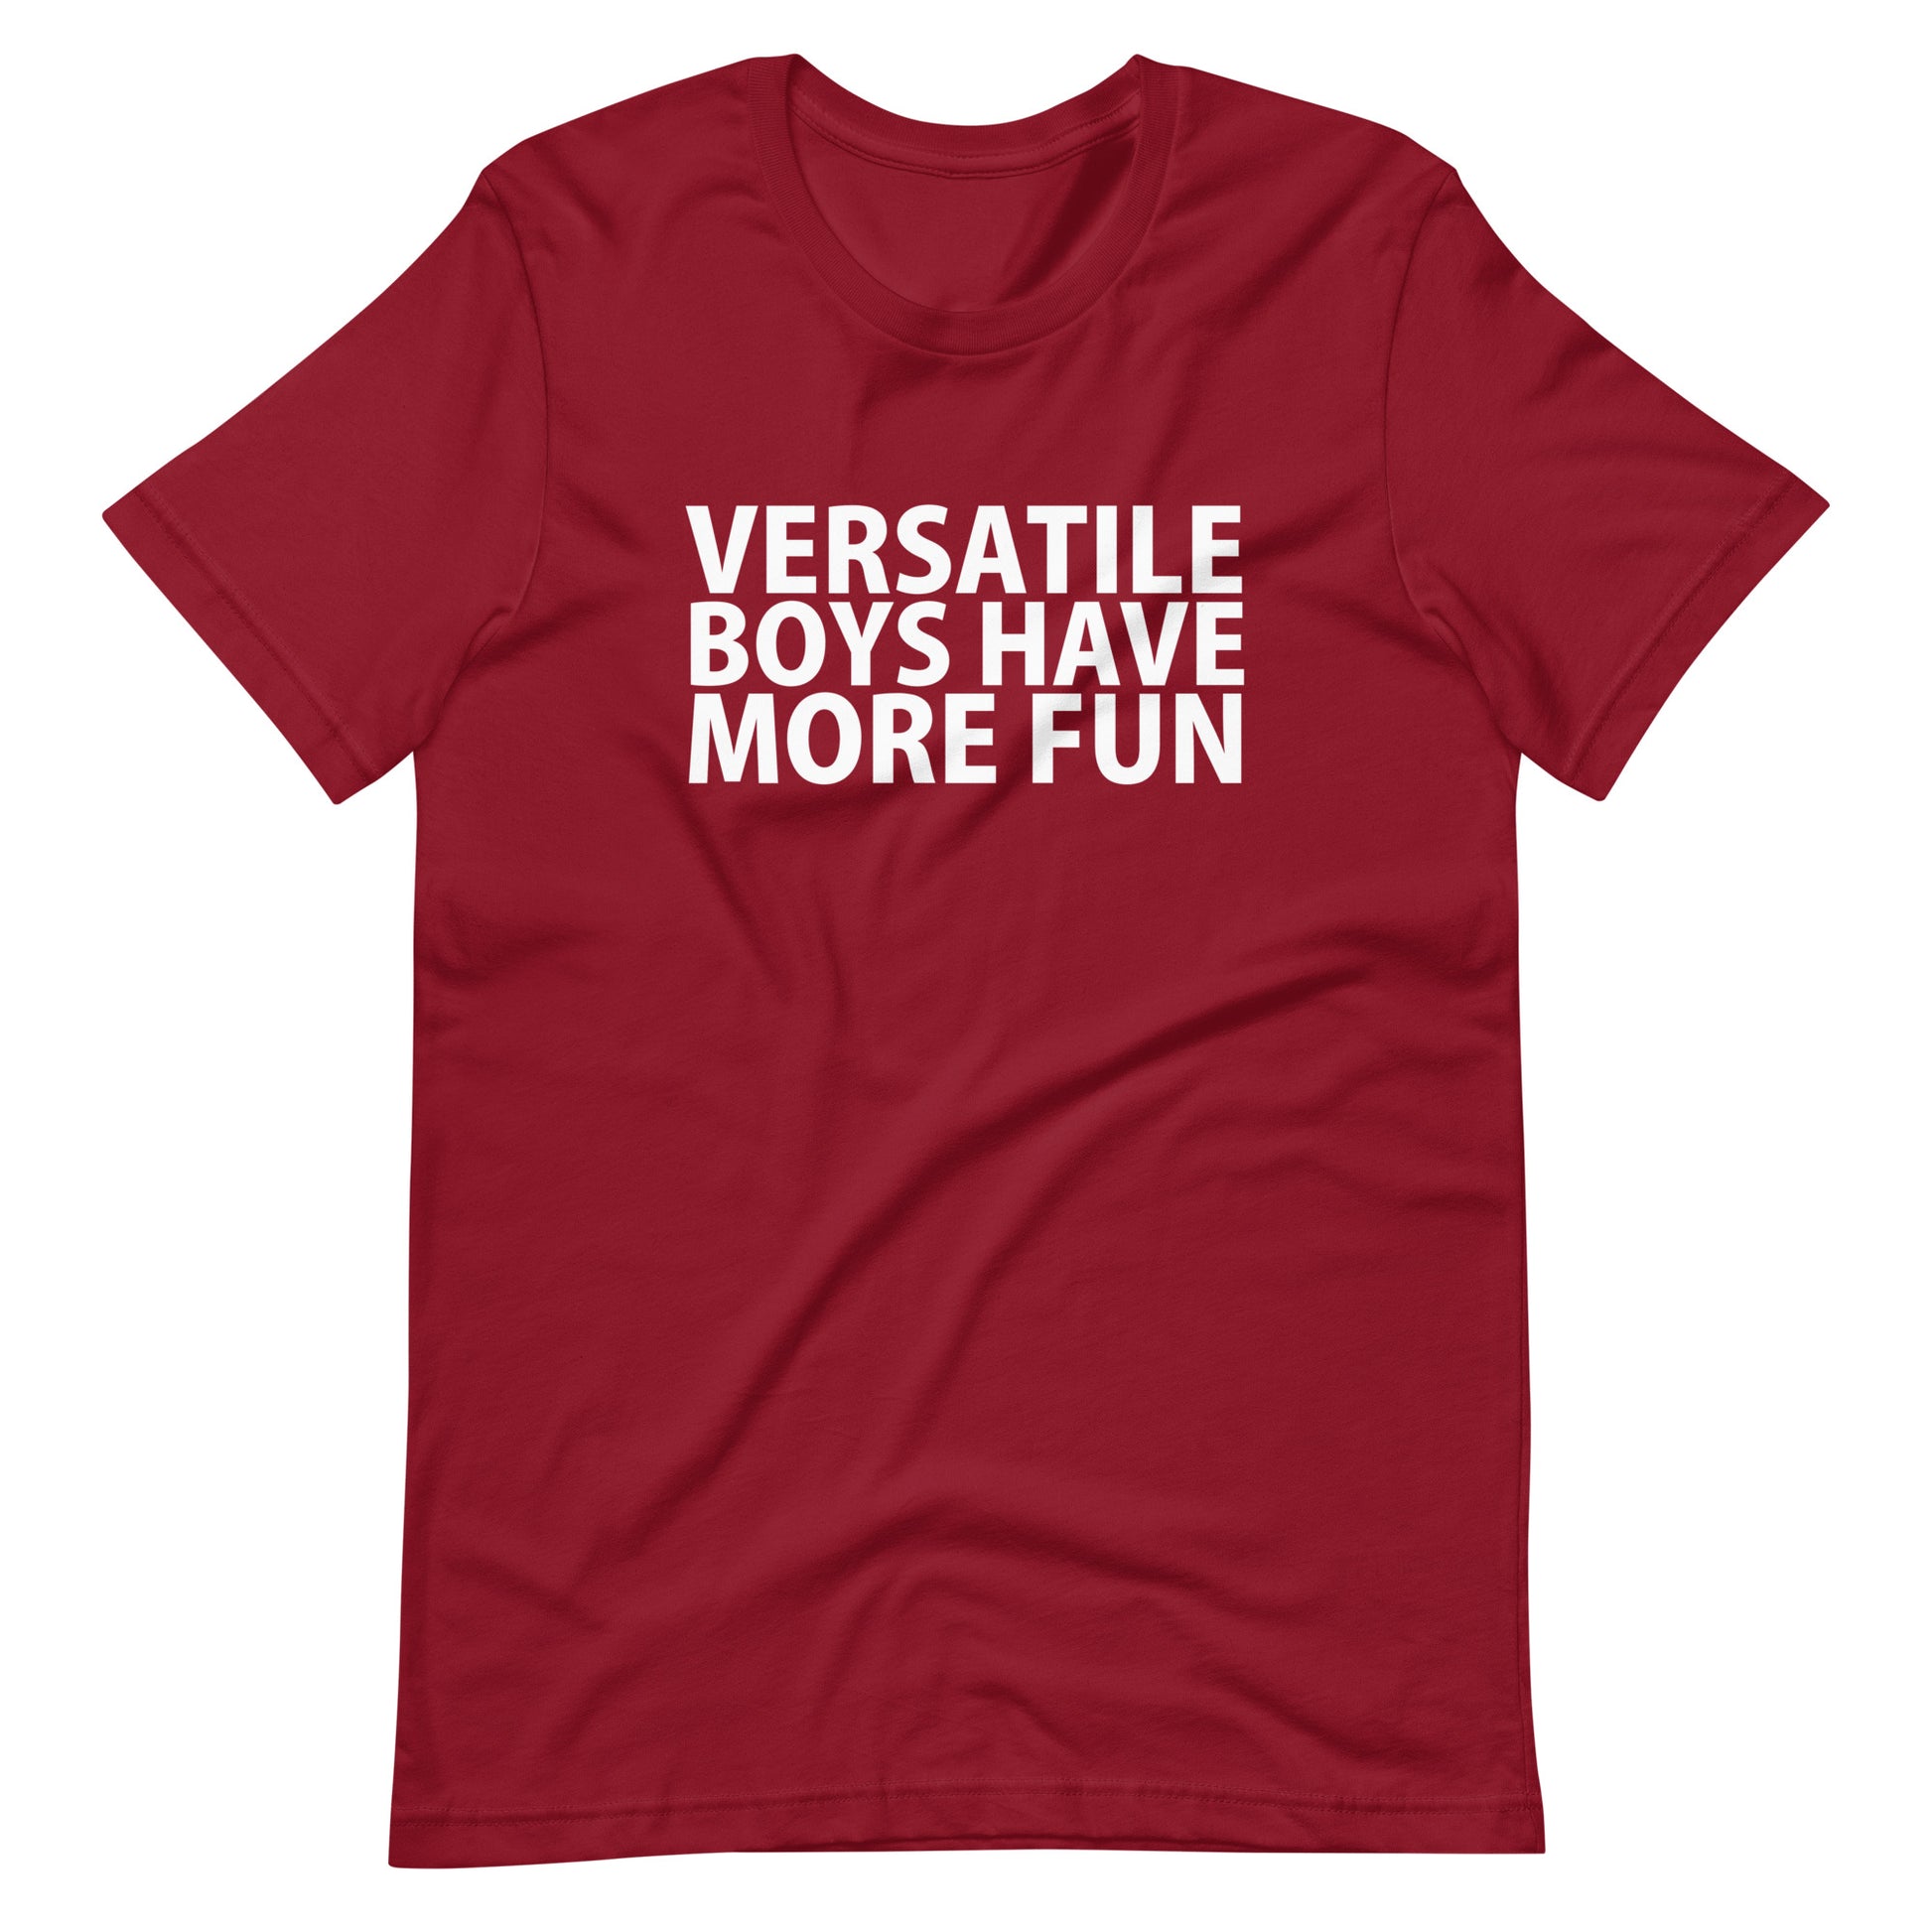 Versatile Boys Have Move Fun T-Shirt - Cardinal